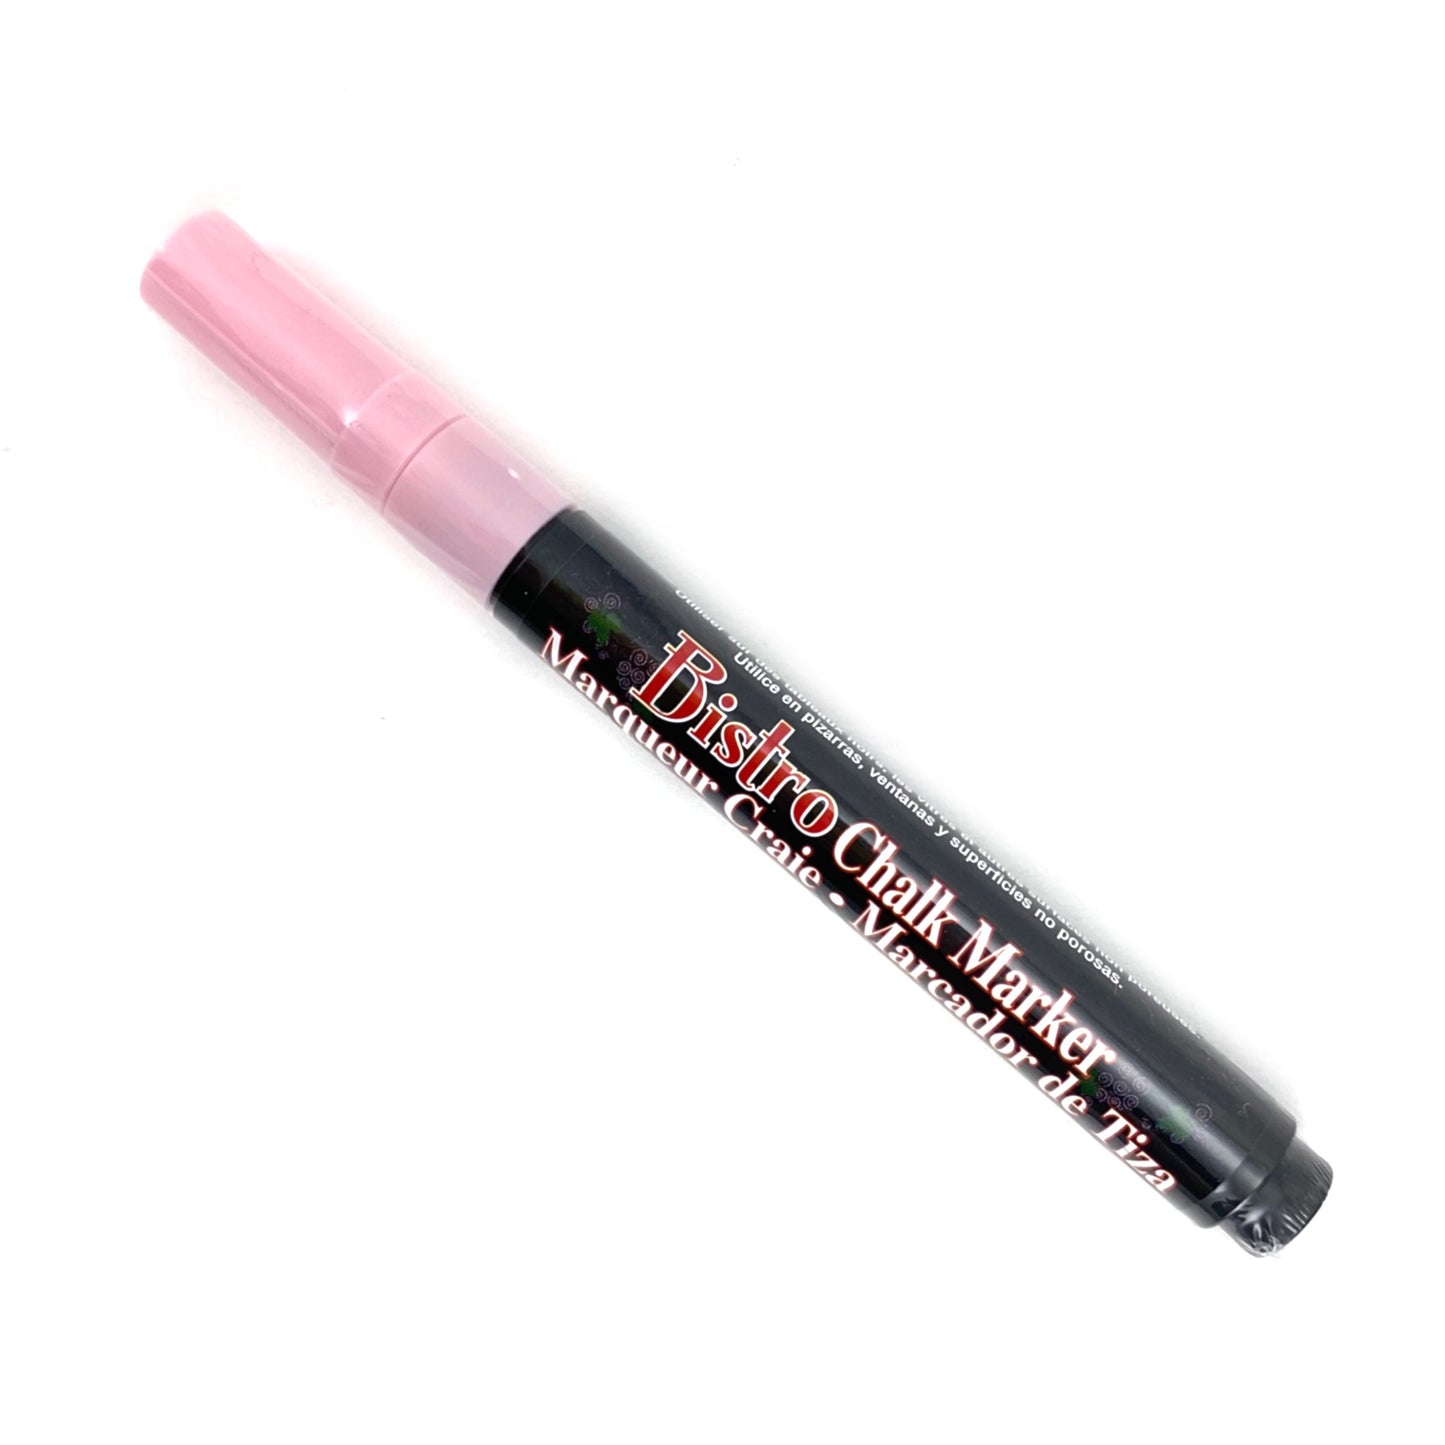 Bistro Chalk Marker - Fine (3mm) - Blush Pink by Marvy Uchida - K. A. Artist Shop